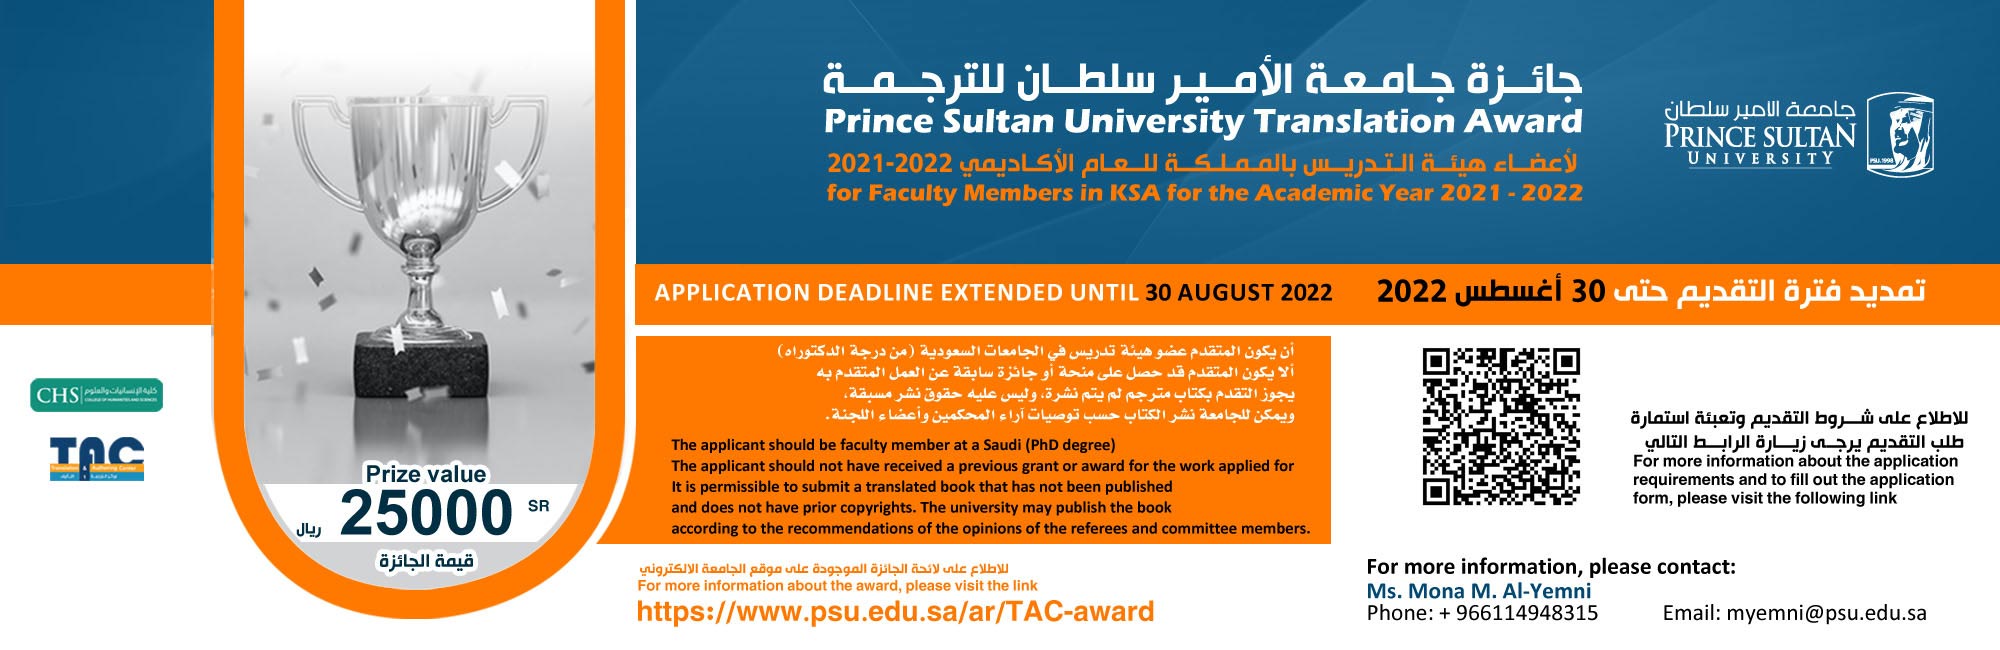 جائزة جامعة الأمير سلطان للترجمة لأعضاء هيئة التدريس للعام الأكاديمي 2021-2022